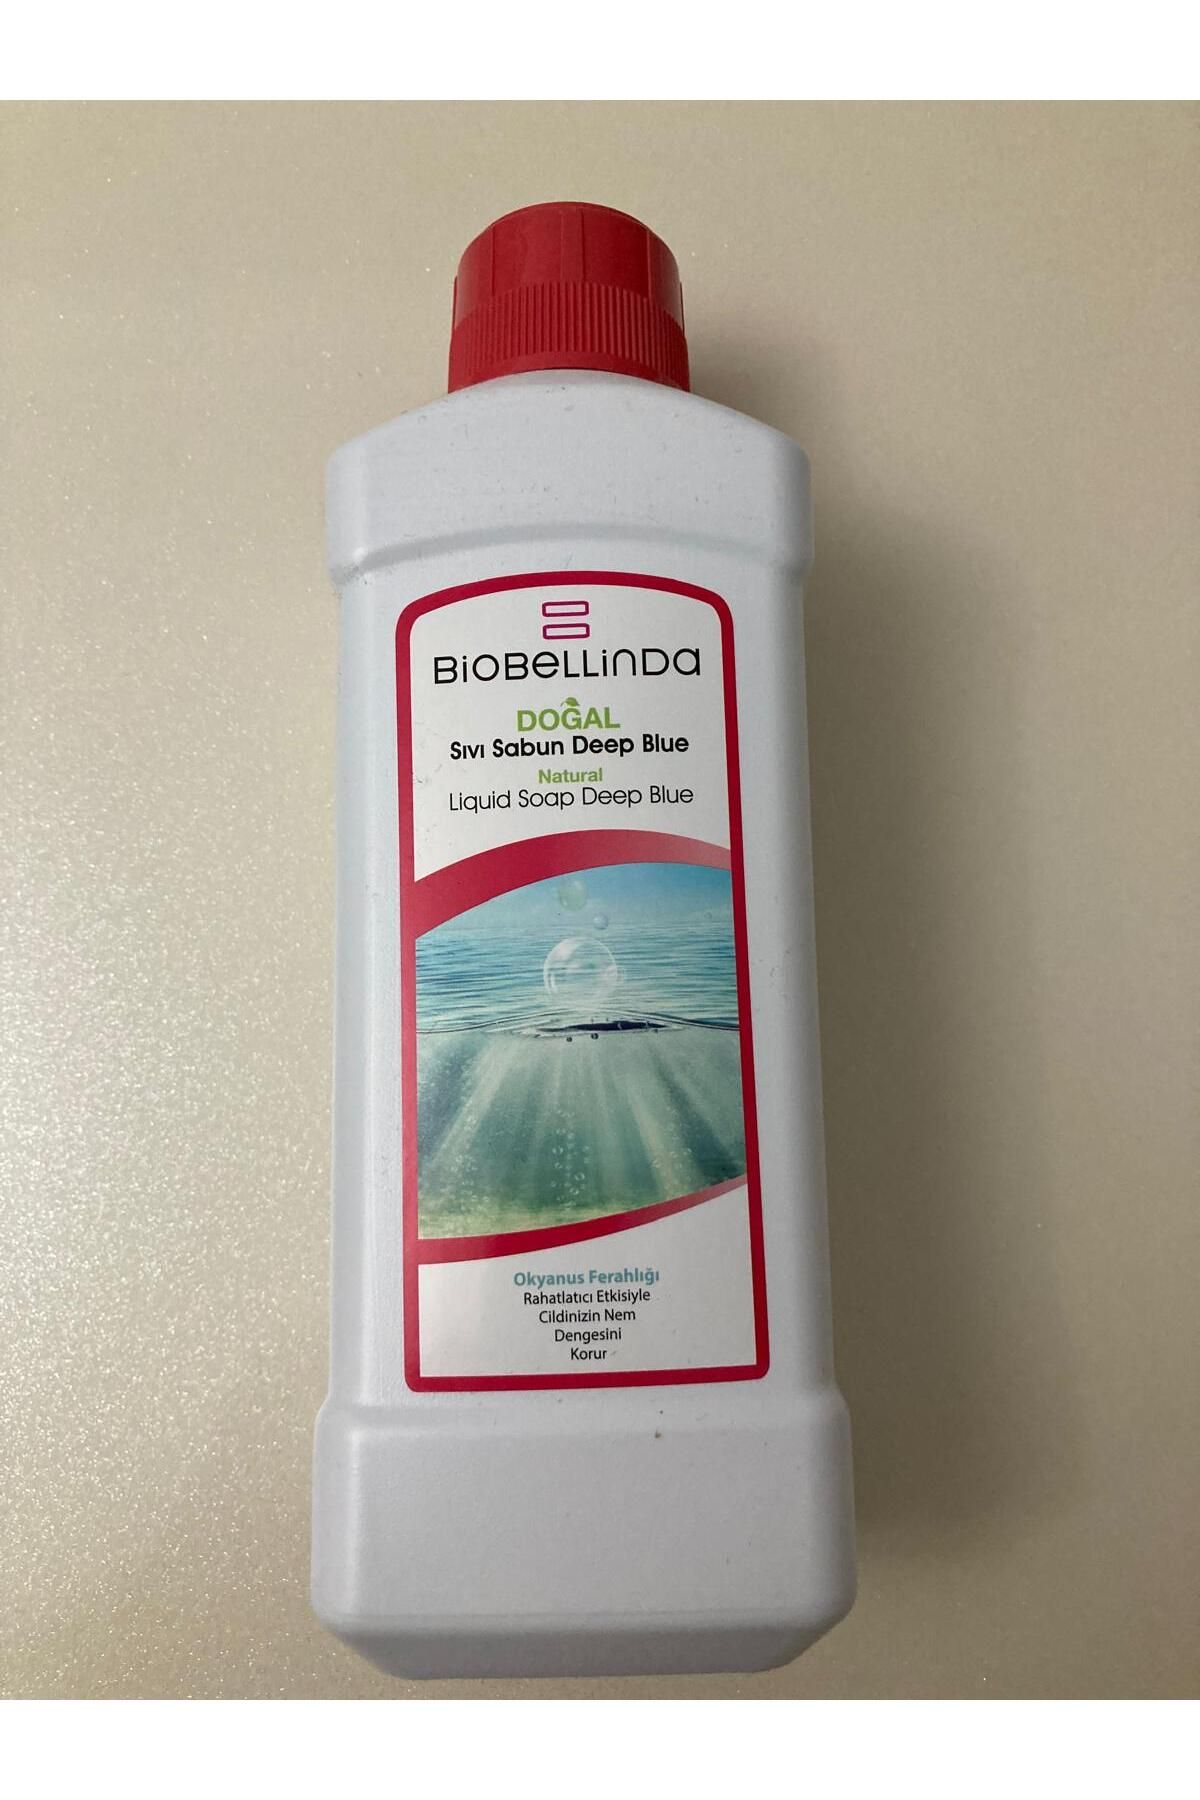 BioBellinda doğal yerli sıvı sabun Deep Blue